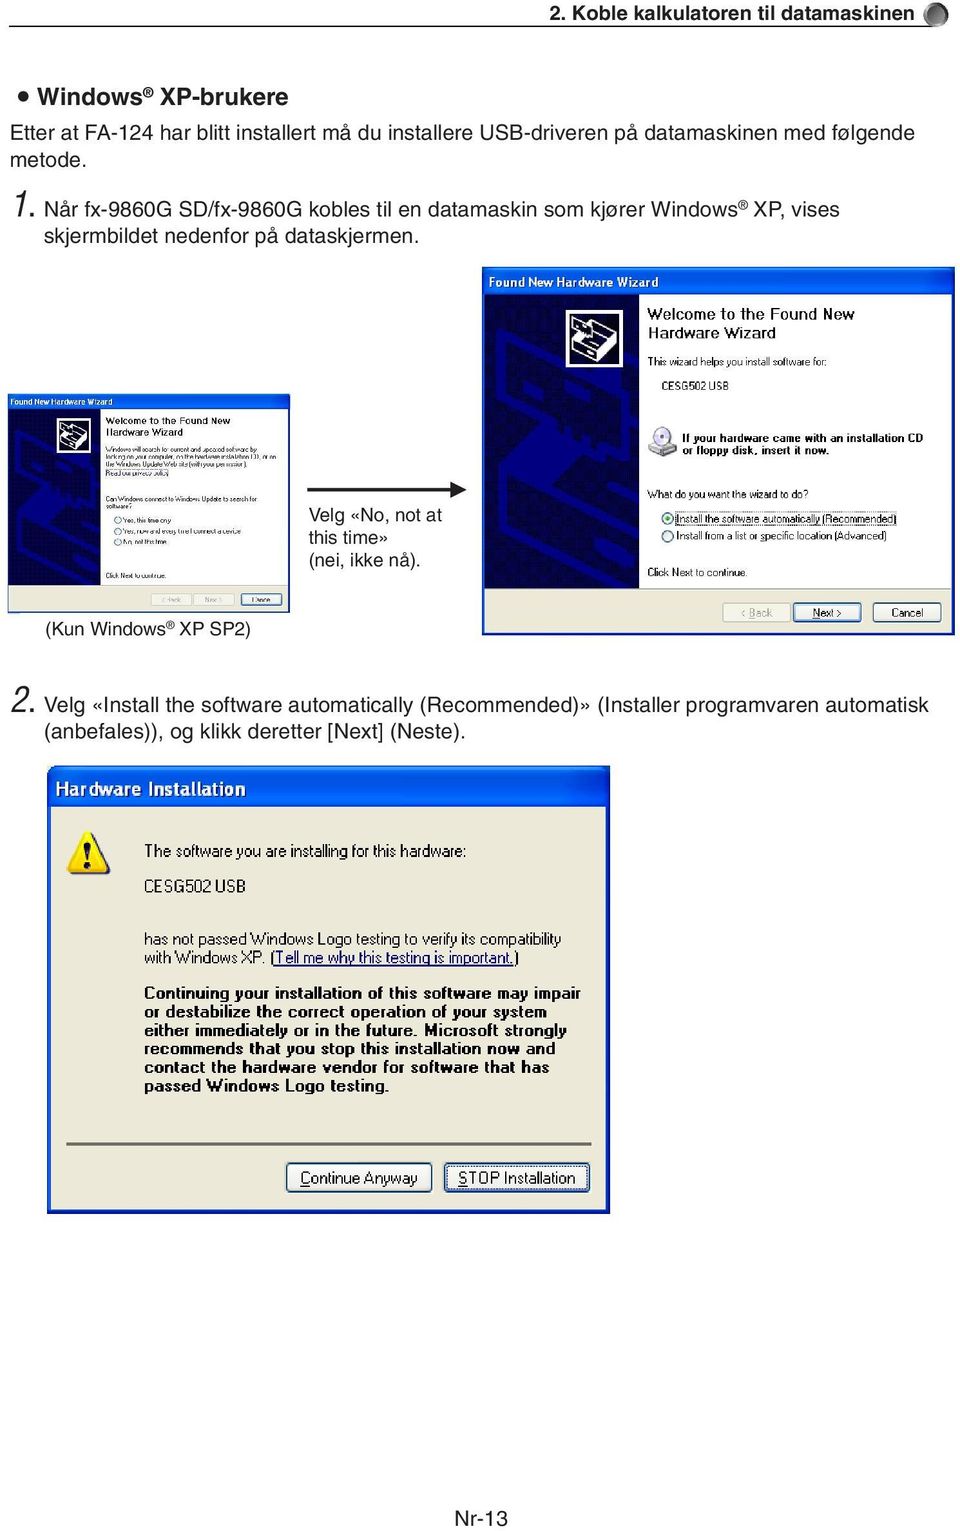 Når fx-9860g SD/fx-9860G kobles til en datamaskin som kjører Windows XP, vises skjermbildet nedenfor på dataskjermen.